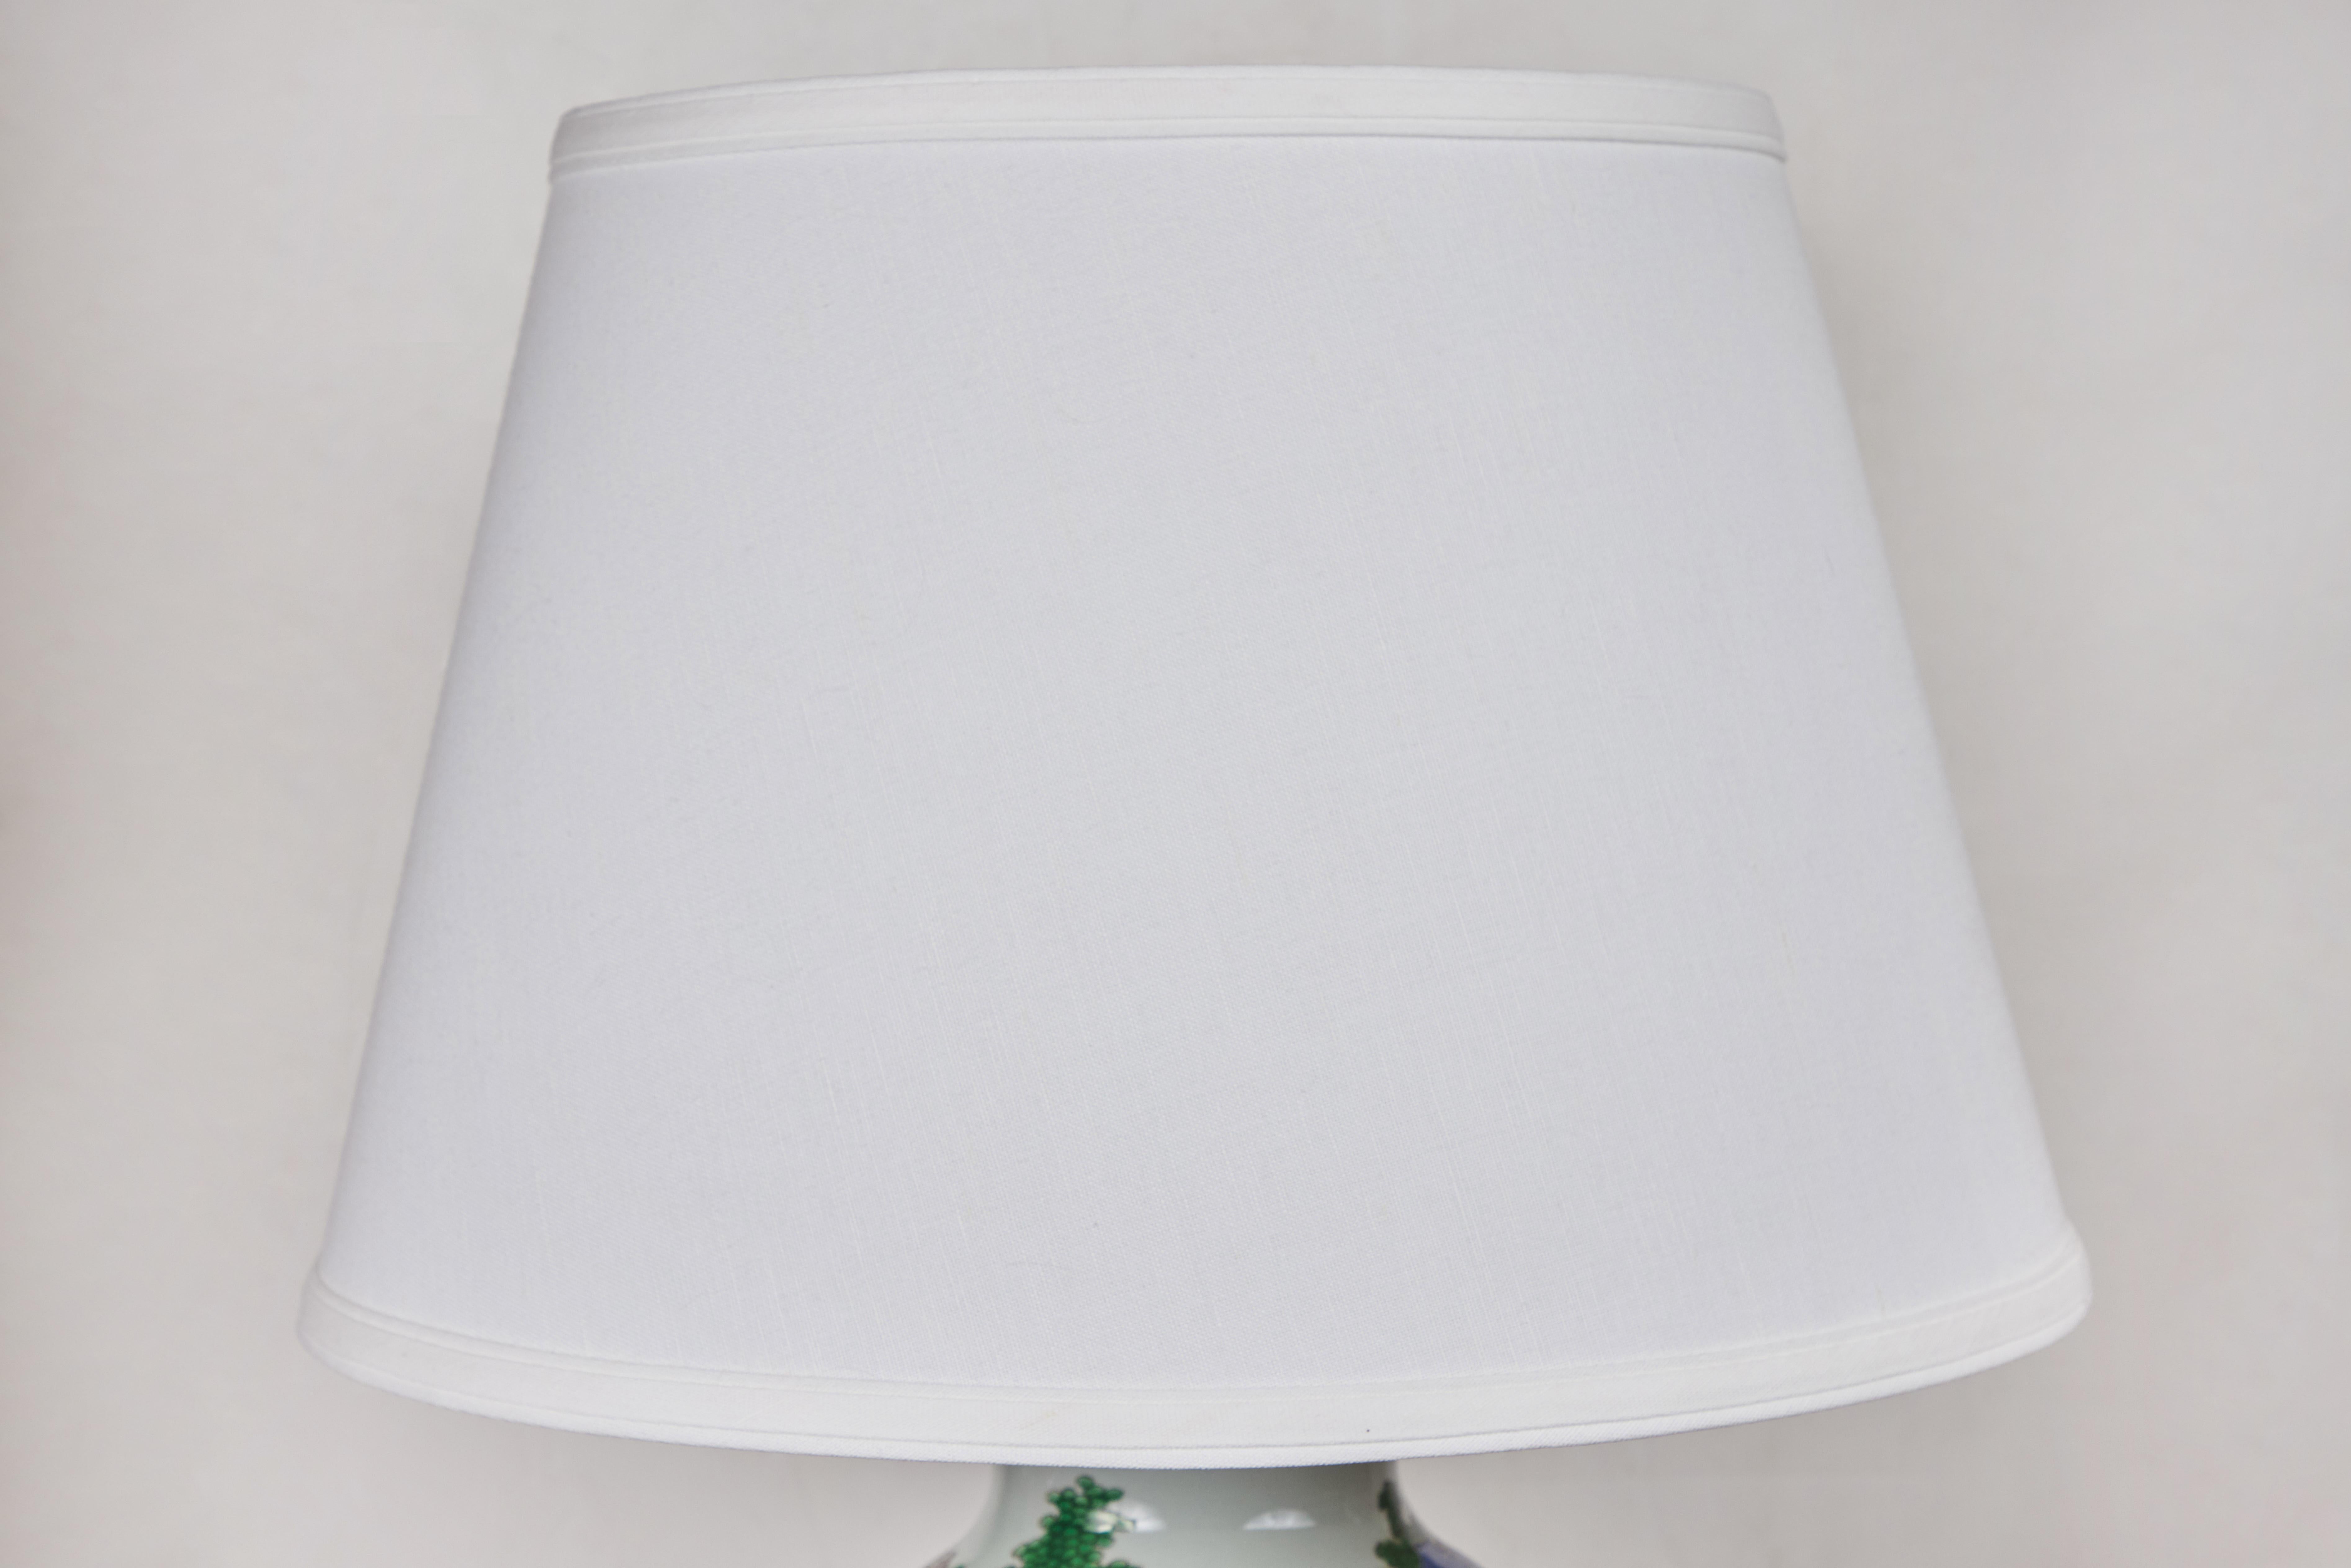 Gilt Republic Period, Porcelain Table Lamps For Sale